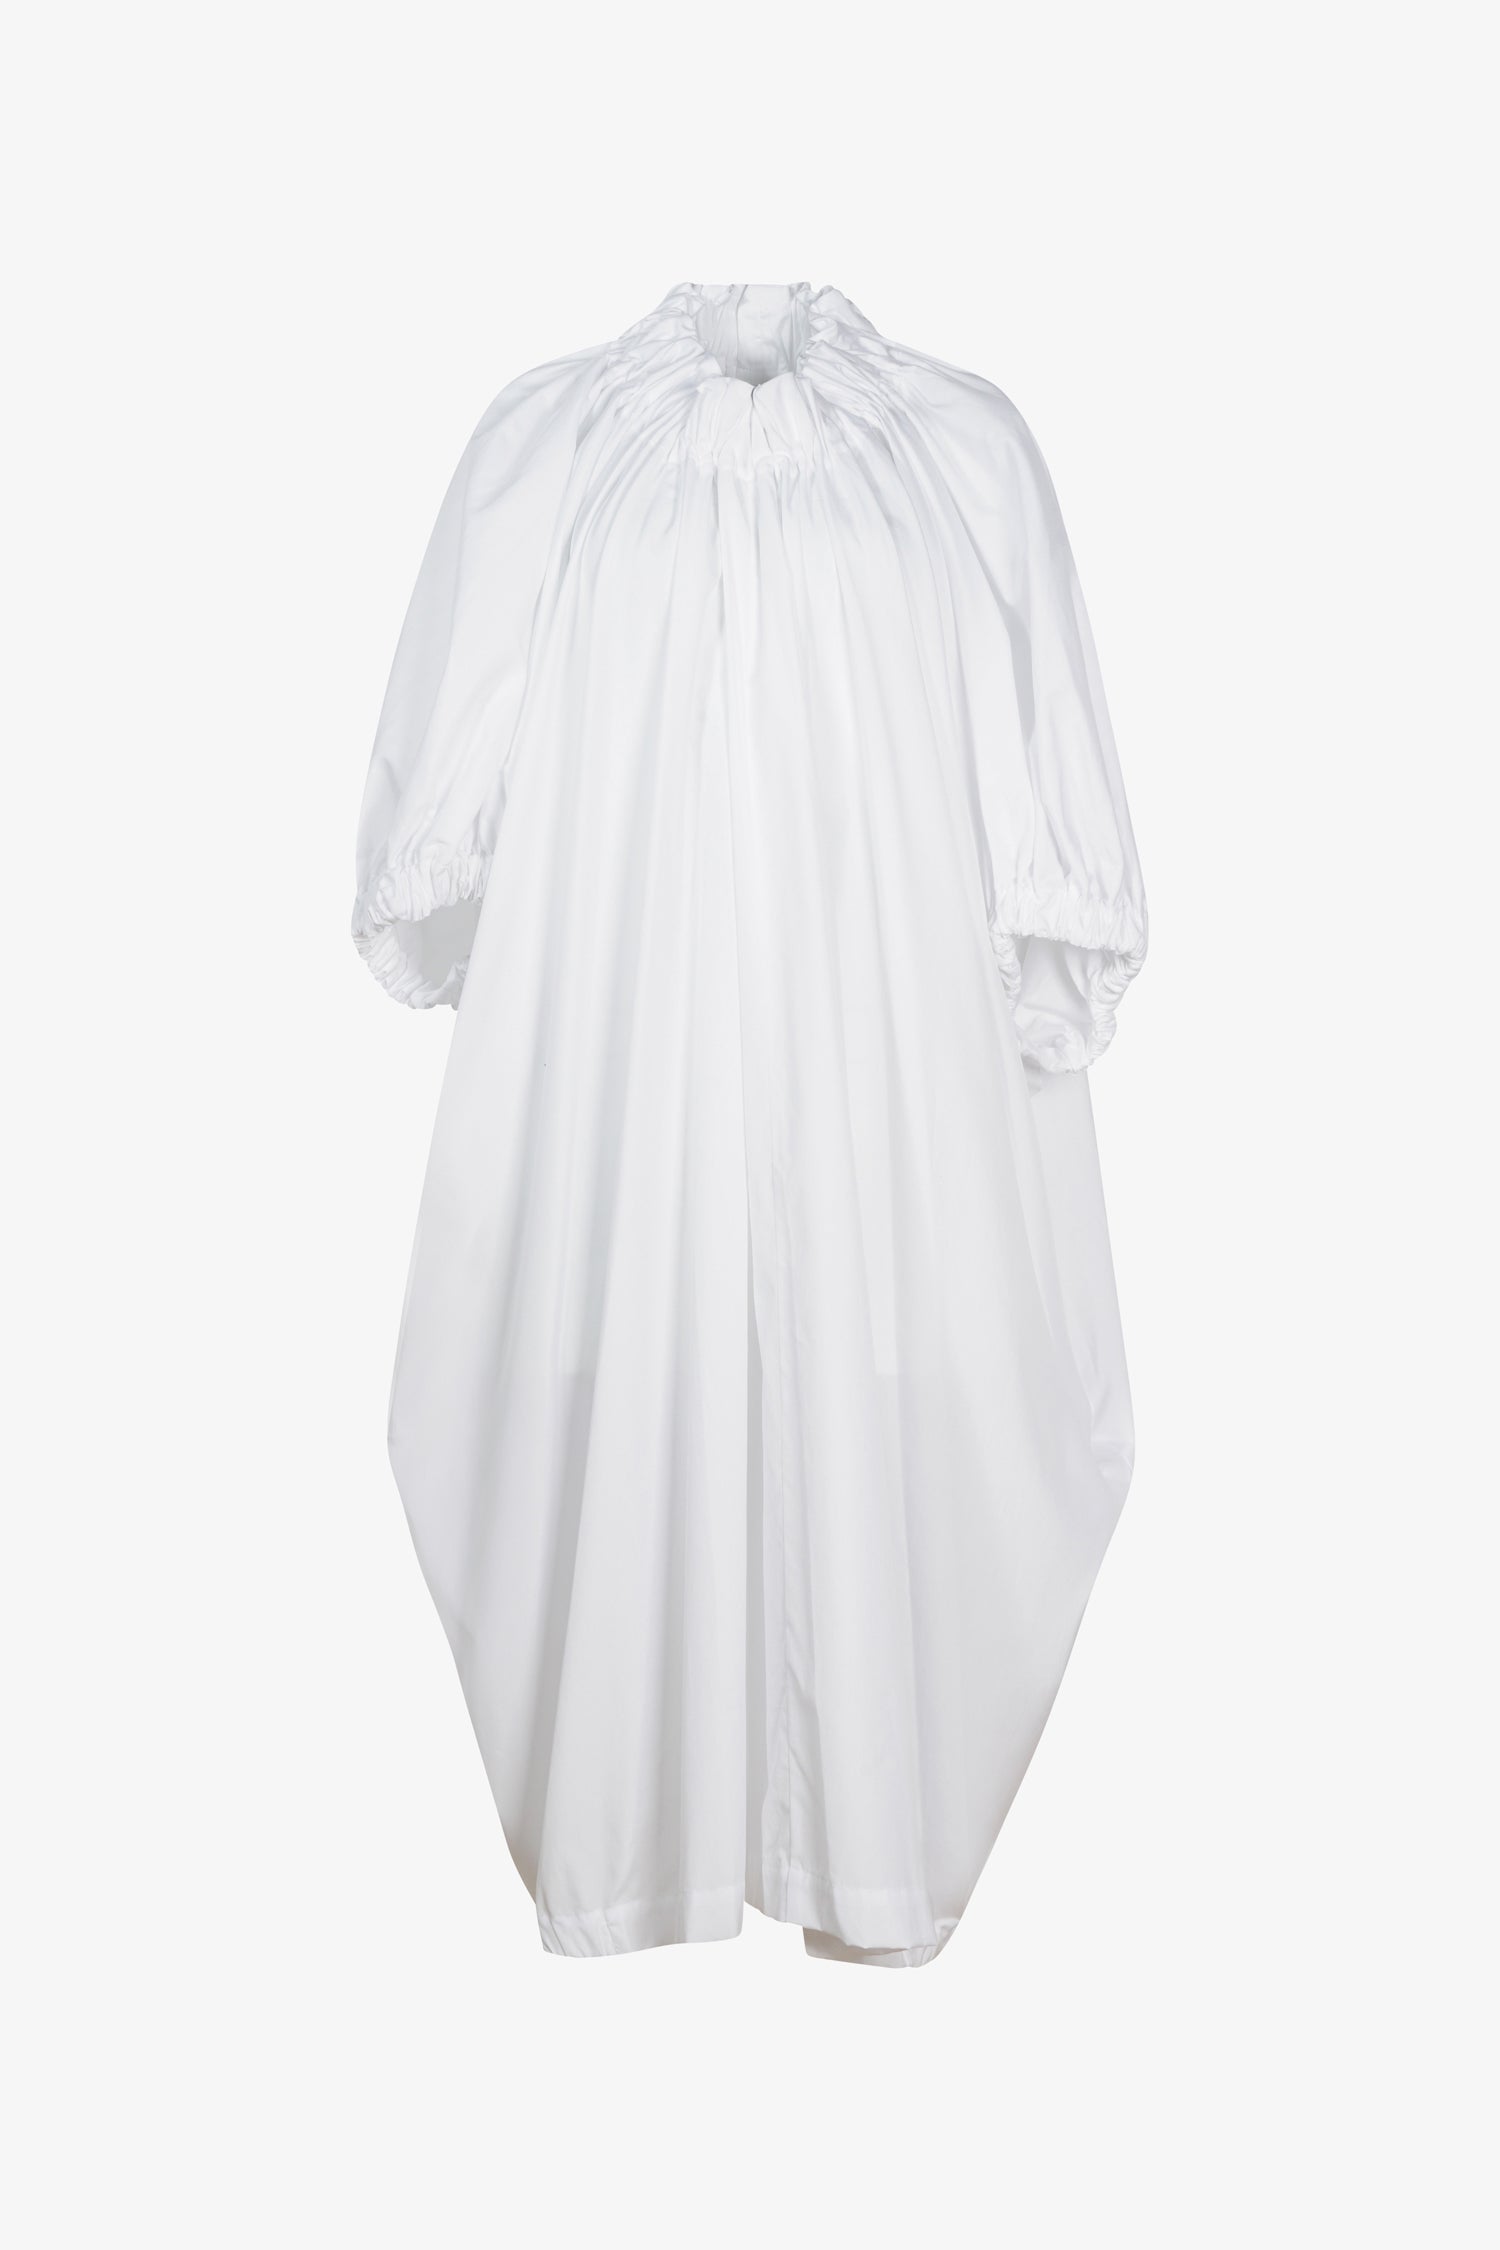 Selectshop FRAME - COMME DES GARÇONS COMME DES GARÇONS Pleated Dress Dress Dubai